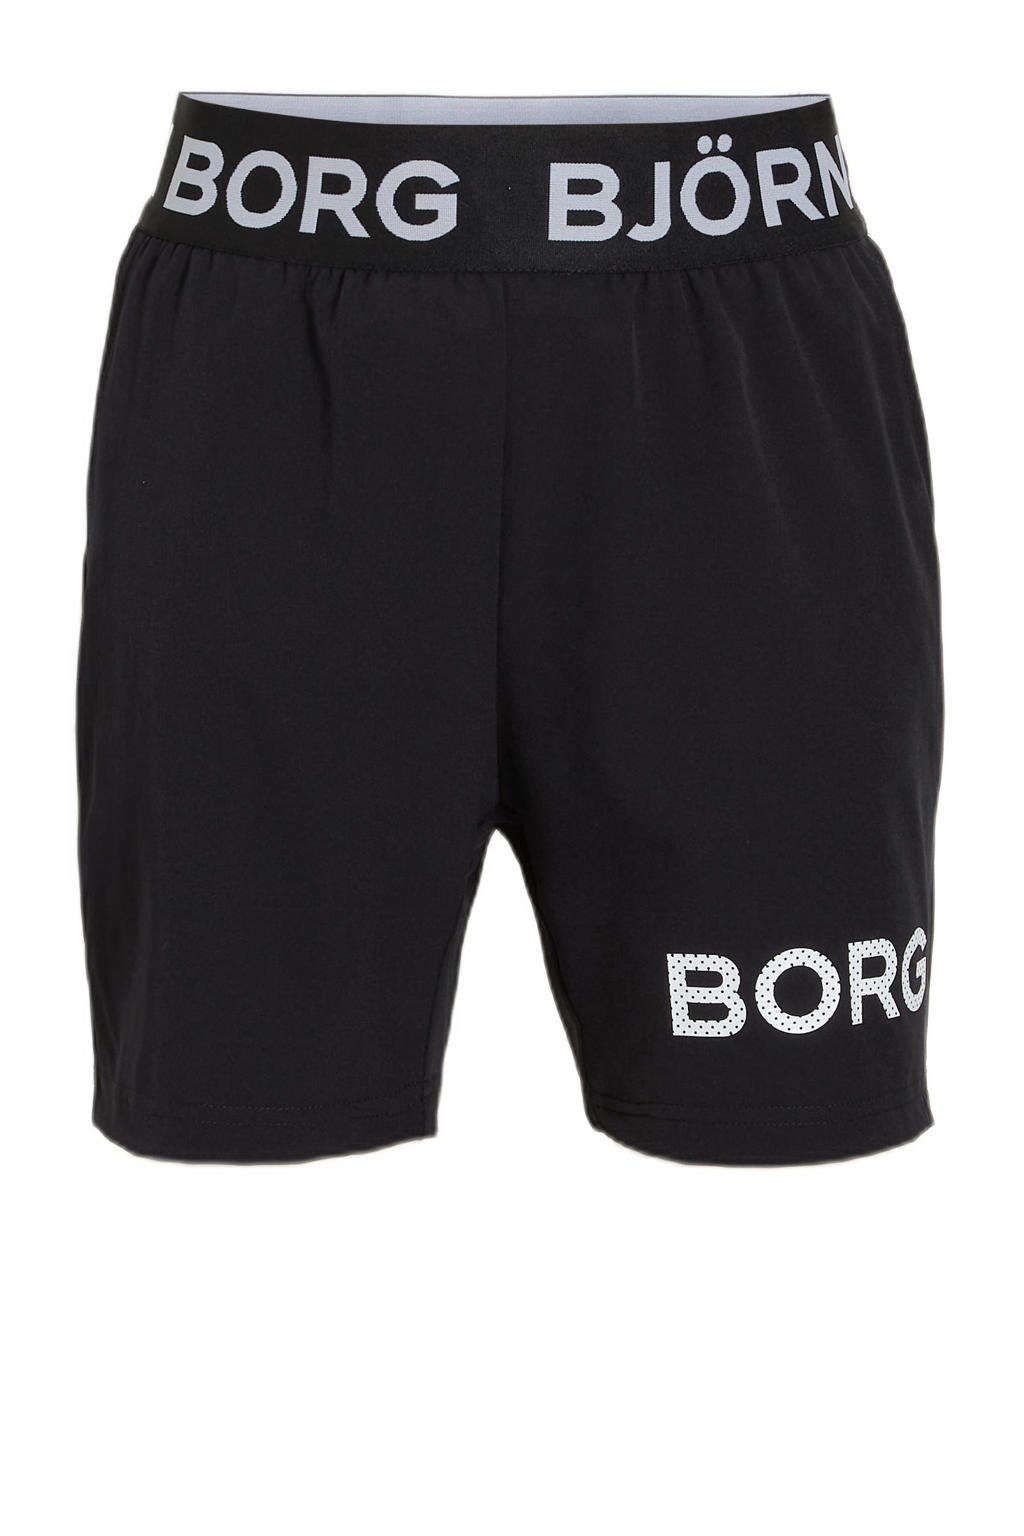 Zwarte jongens Björn Borg sportshort van polyester met regular fit, elastische tailleband en camouflageprint